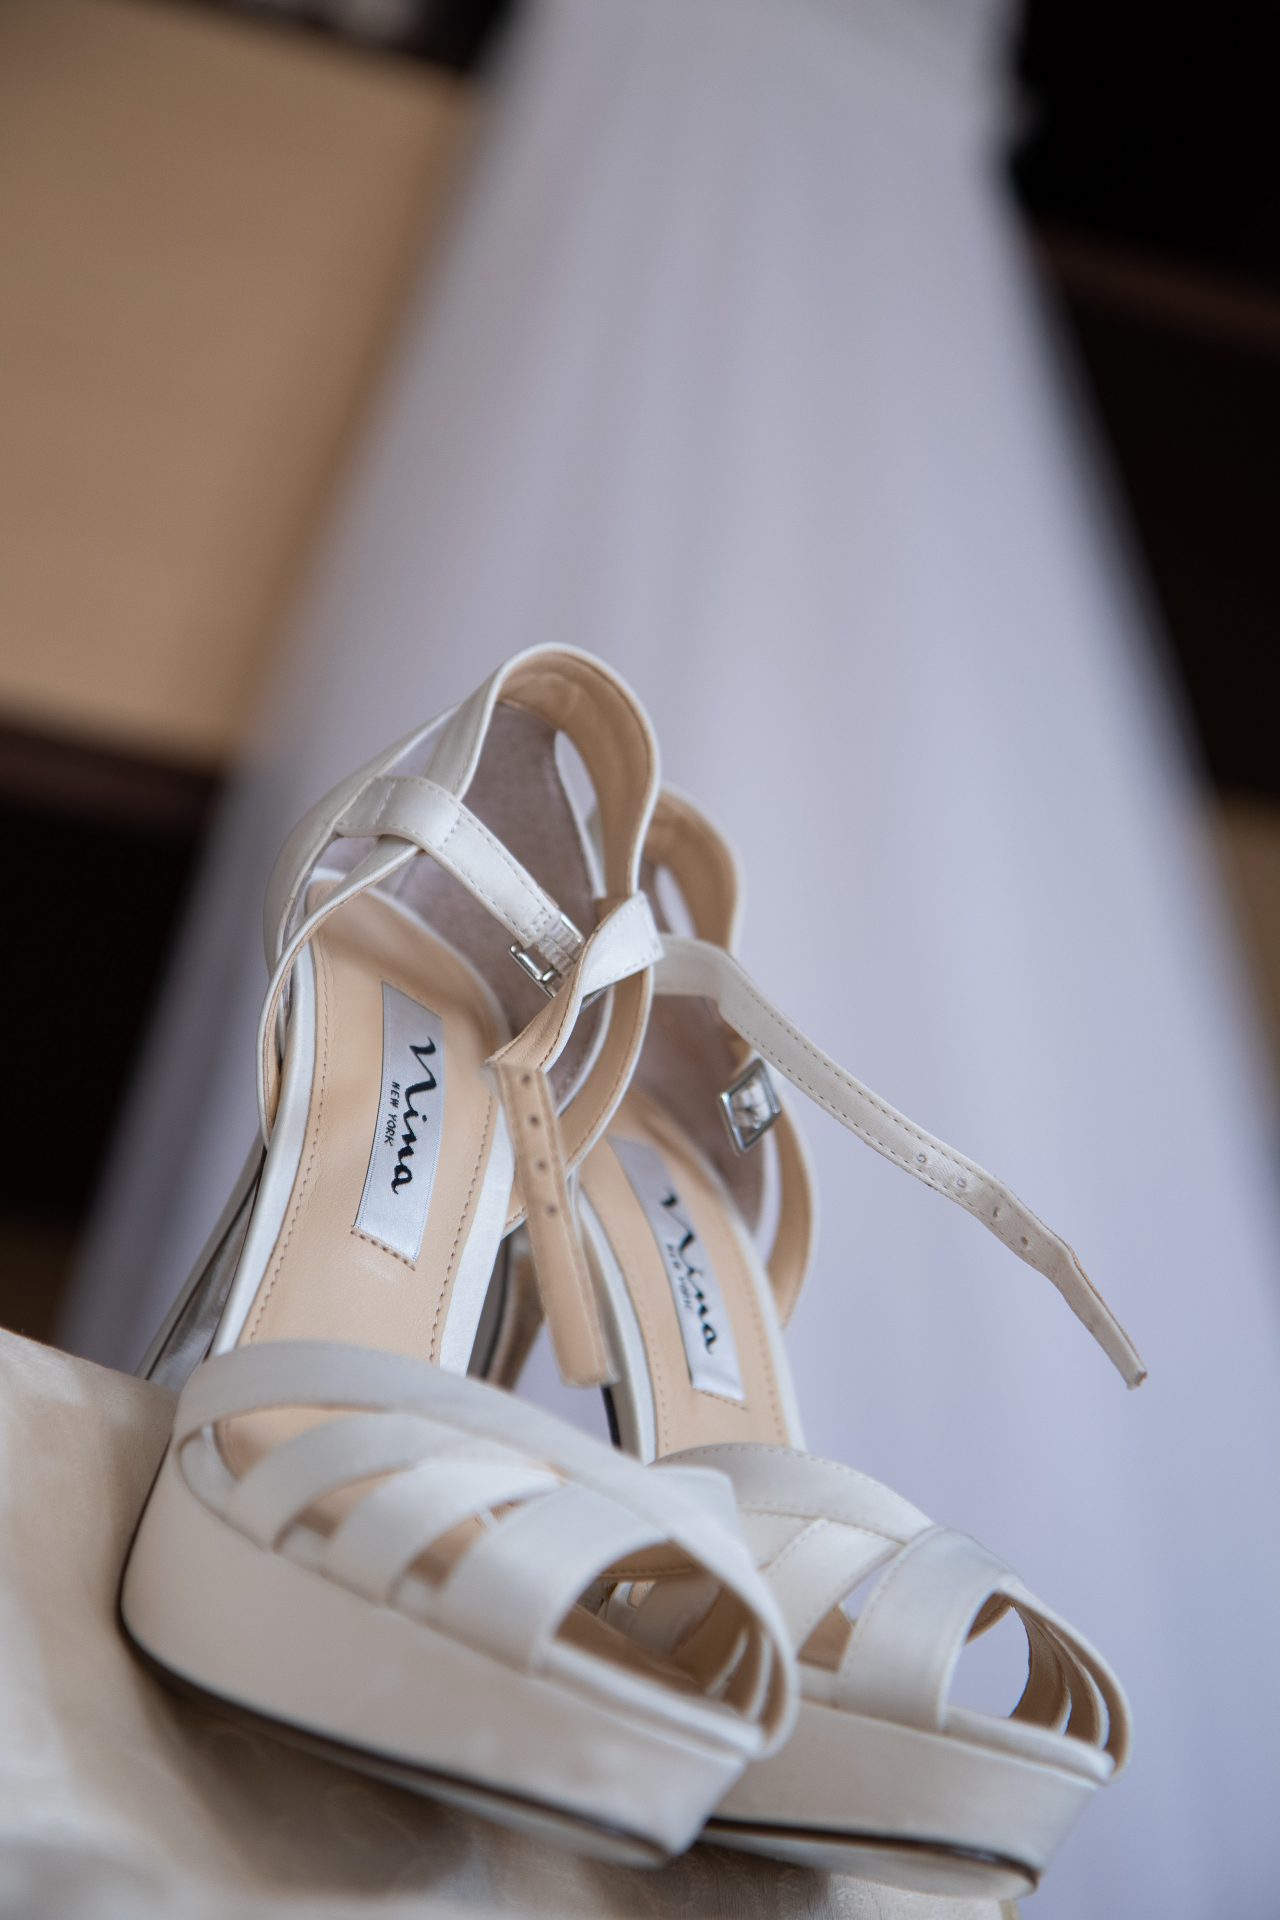 Νυφικά παπούτσια στην φωτογράφηση προετοιμασίας νύφης για τον γάμο στη Βίλλα Ναοινα